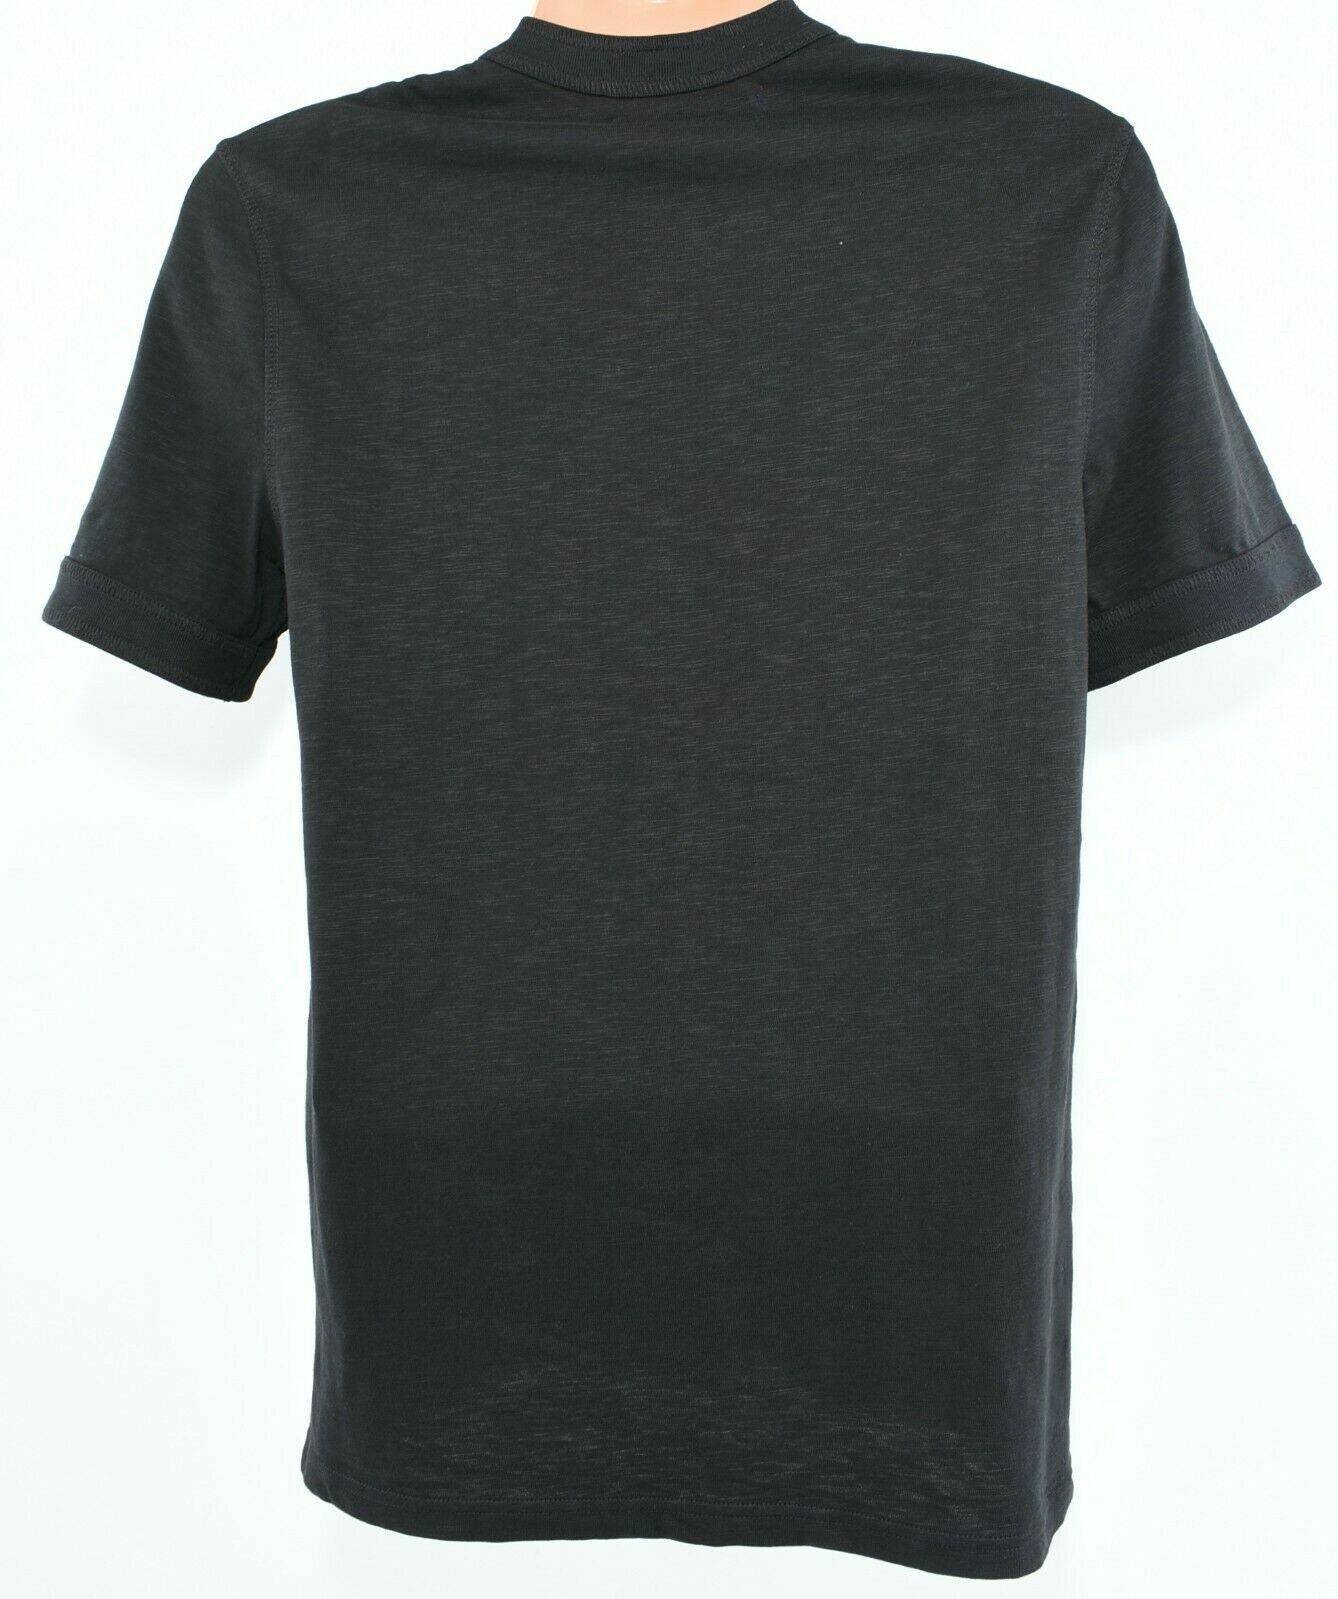 CALVIN KLEIN JEANS Men's Button Neck T-shirt, Black, size S